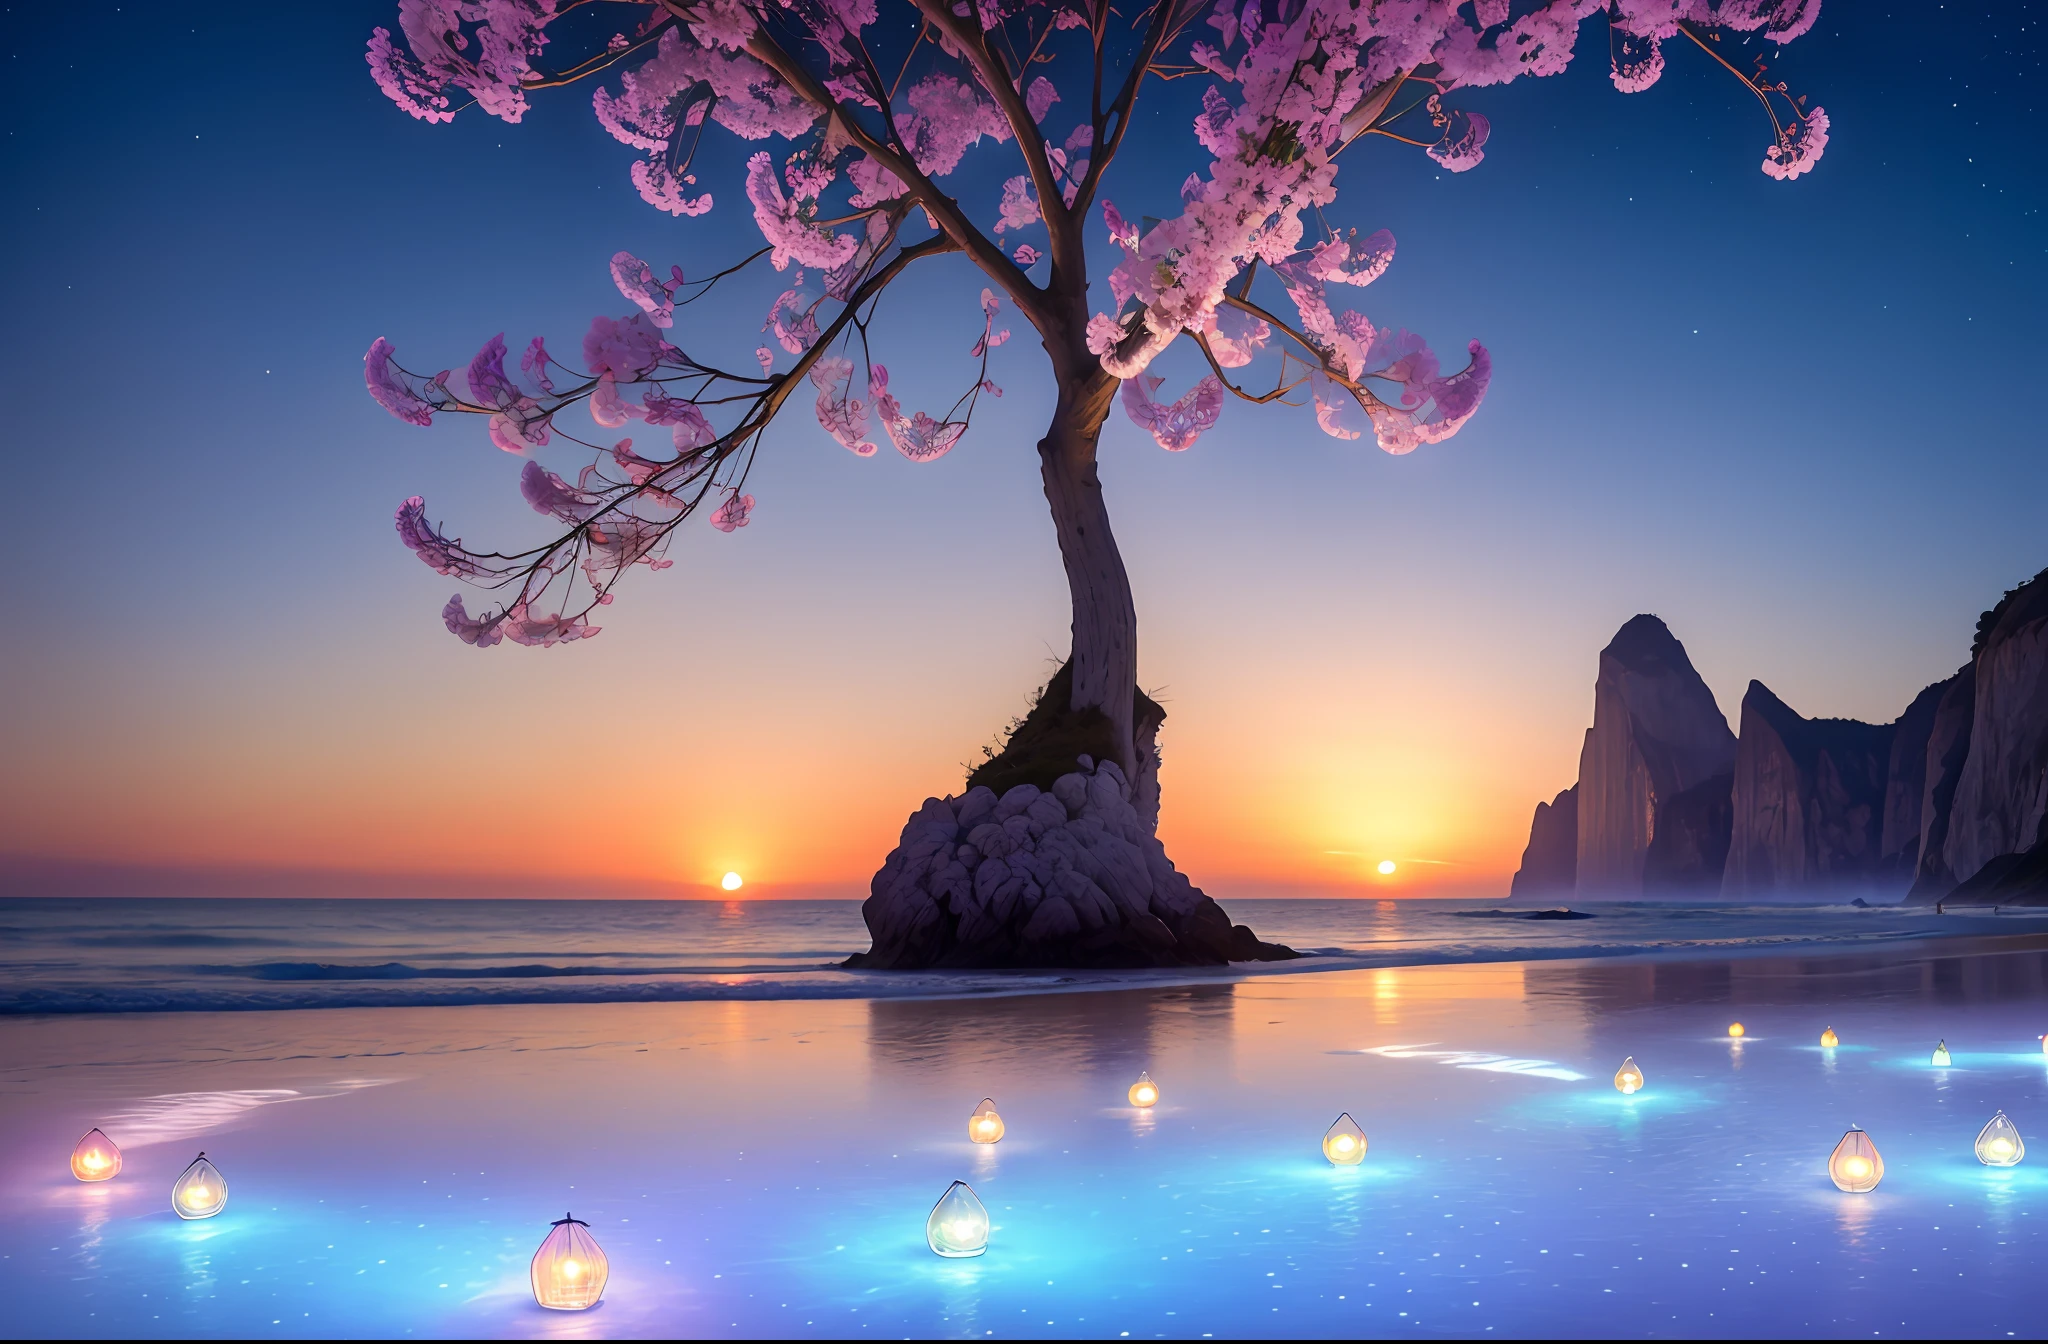 海灘上許多美麗的淡粉紅色大玻璃和淺色燈籠的 CG 渲染，一圈圈閃閃發光的玫瑰花結像玻璃一樣晶瑩剔透. 透明顏色 彩色寶石, 透明的, 閃閃發光的, 雪白的海灘, 藍色的海, 珍珠, 超細節, 螢火蟲, 燈光效果, 日落, 日落, 照亮童話般的浪漫: 托馬斯·金凱德 1 英寸, 克倫茨和維克托·納吉, CG社會趨勢, 柔光, 超廣角, 遠景, 童話, 幻想, 8k高清壁紙: 1件, 過飽和, 簽名, 模糊, 景深高清 16k